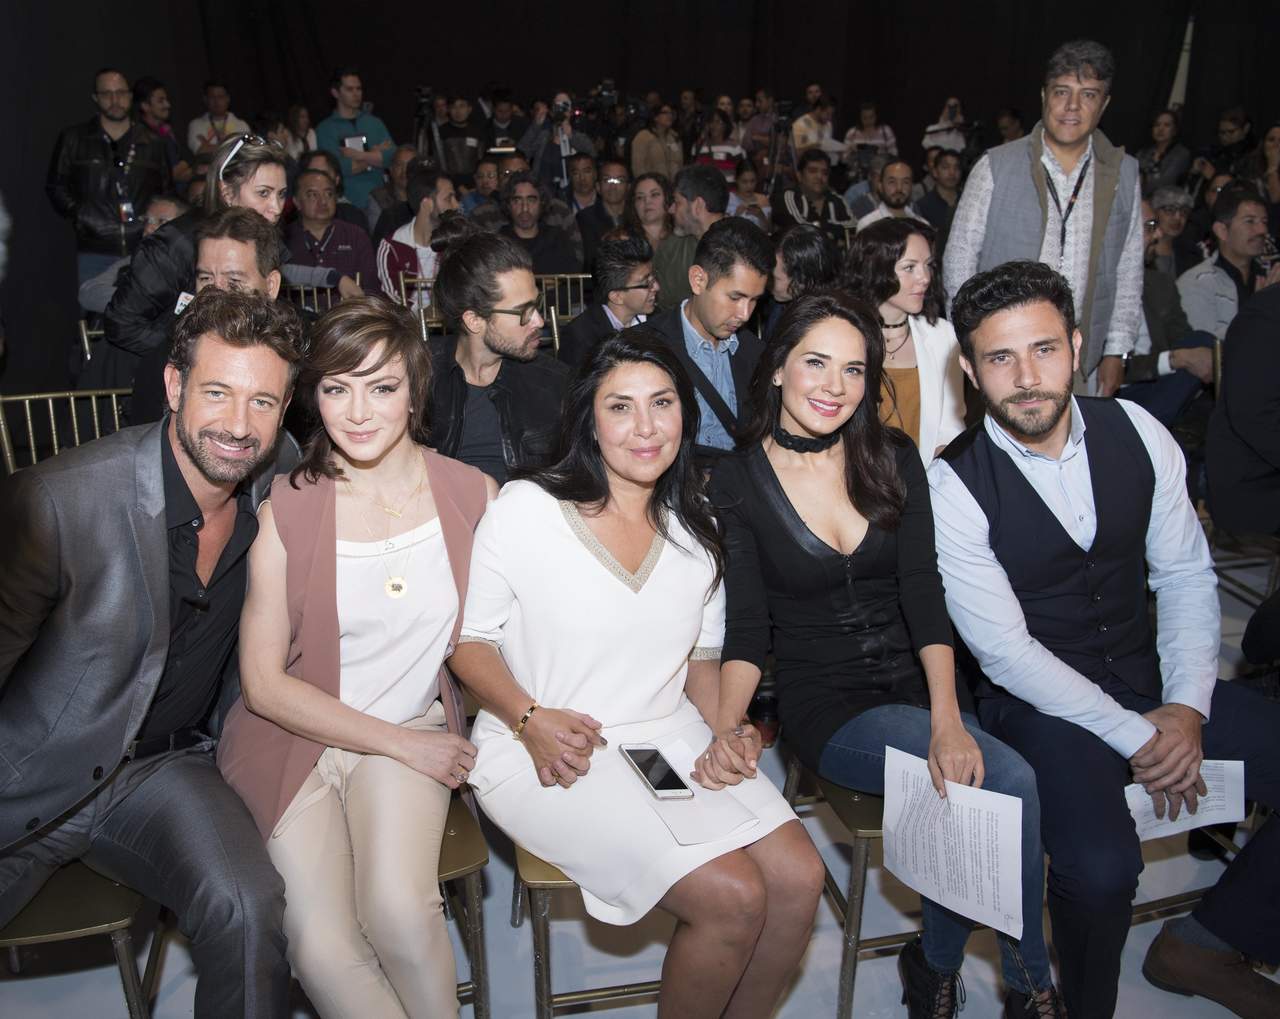 La telenovela iniciará transmisiones el próximo mes de octubre por Las estrellas.